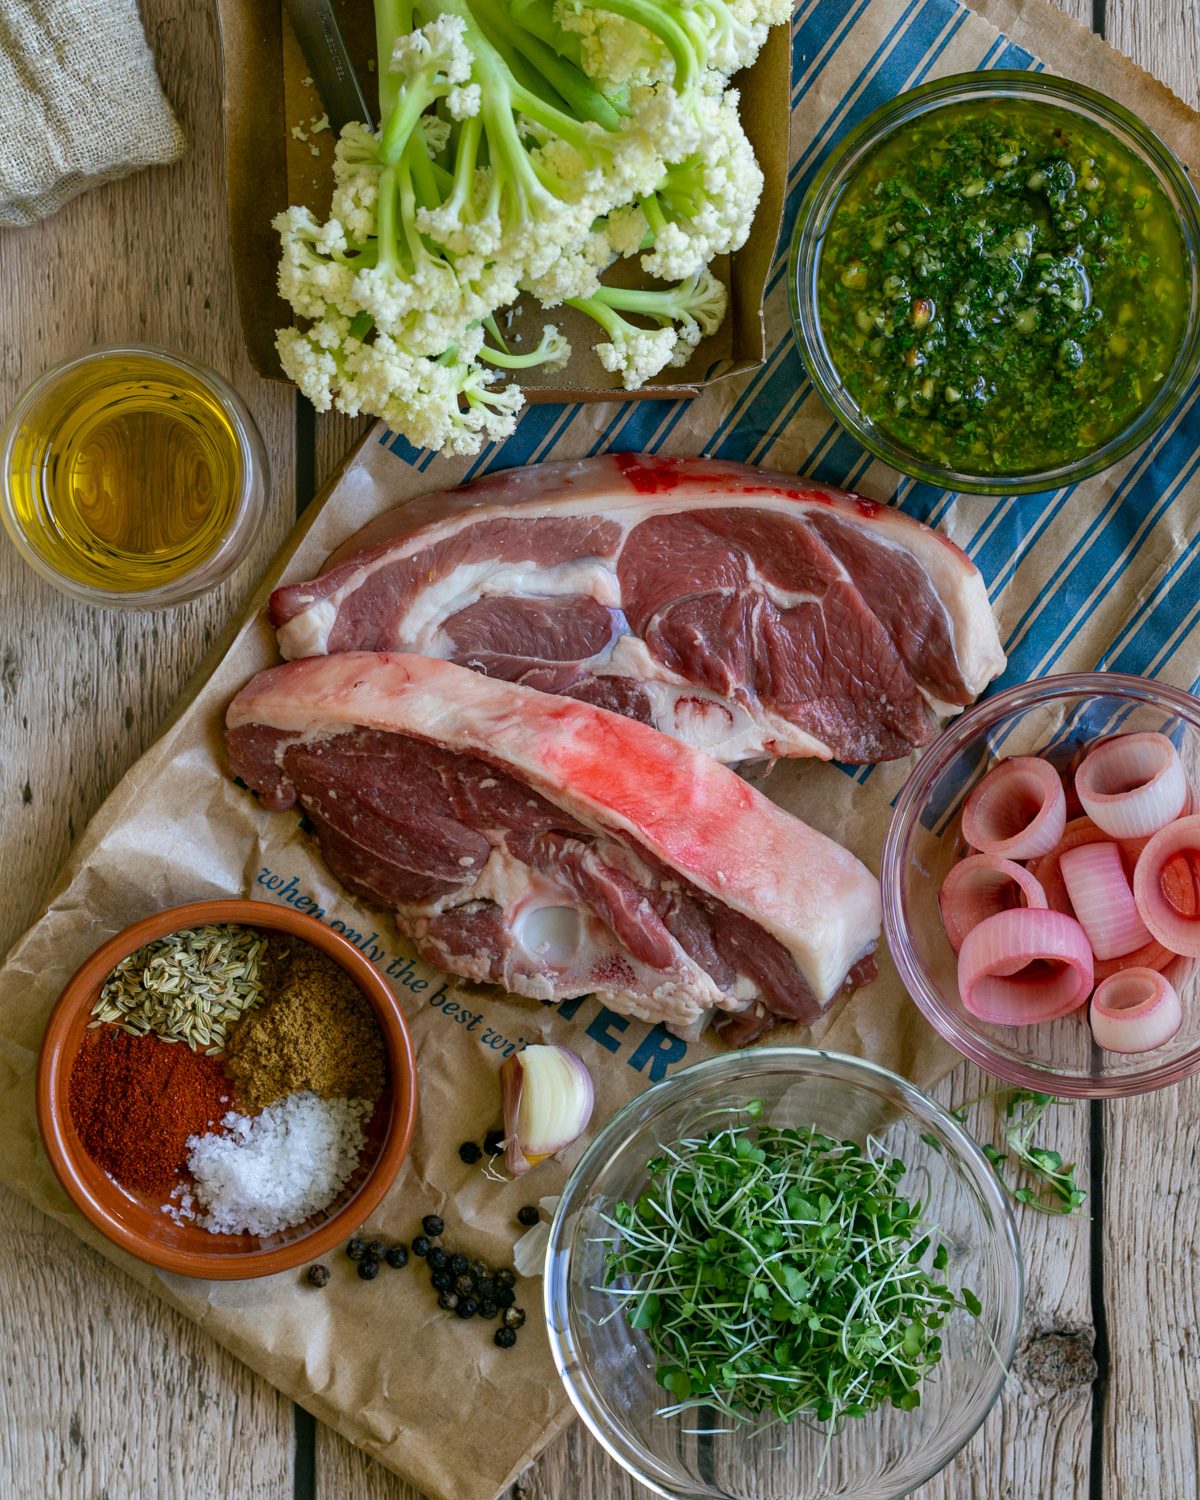 Ingredients to make gigot lamb chops